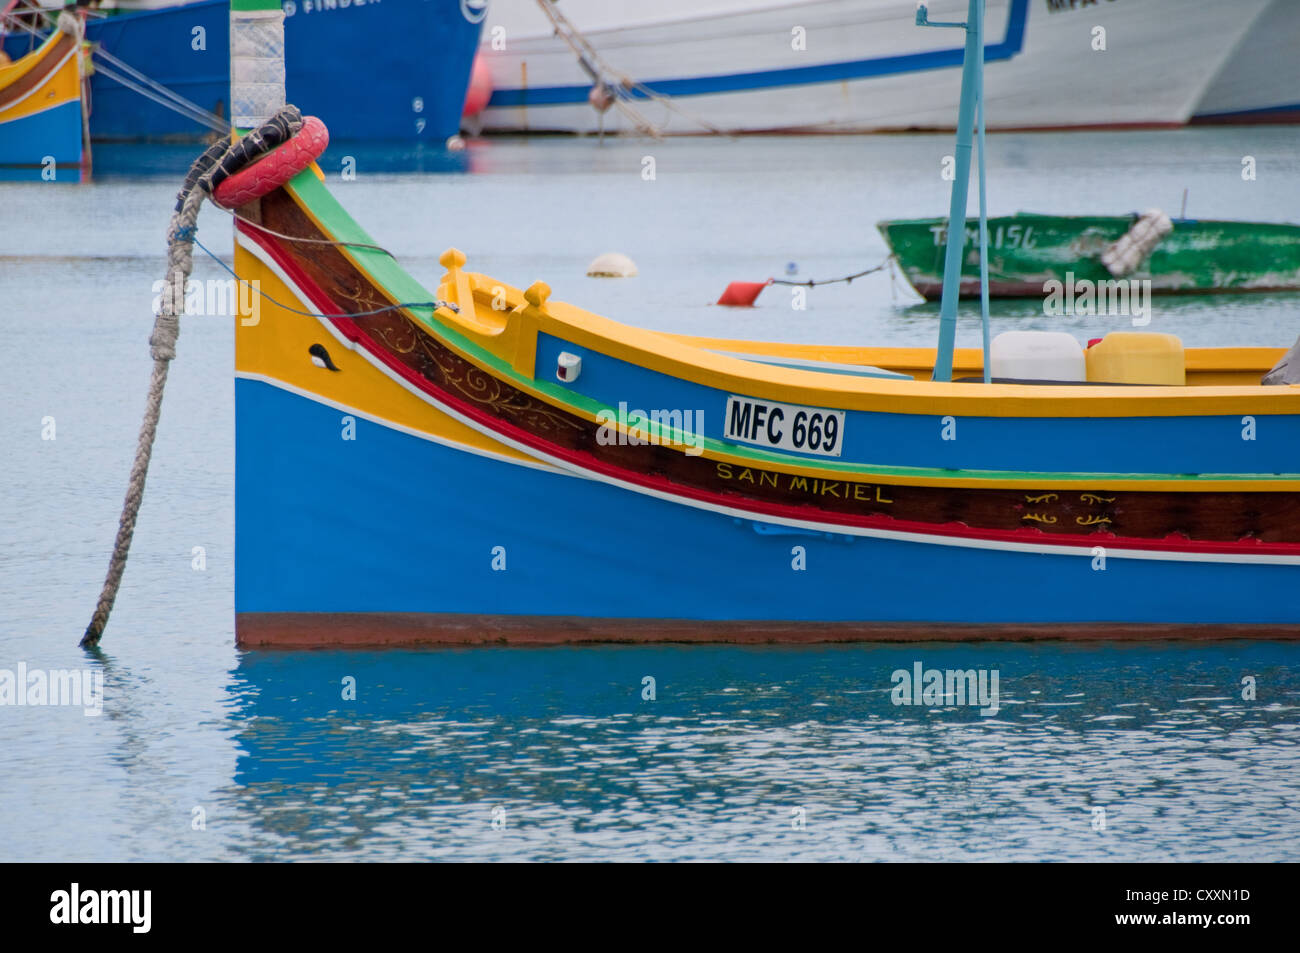 Tradizionale Maltese luzzu "' barca da pesca con l'occhio di Osiride per consentire allontanare gli spiriti maligni. Marsazlokk Bay, Malta Foto Stock